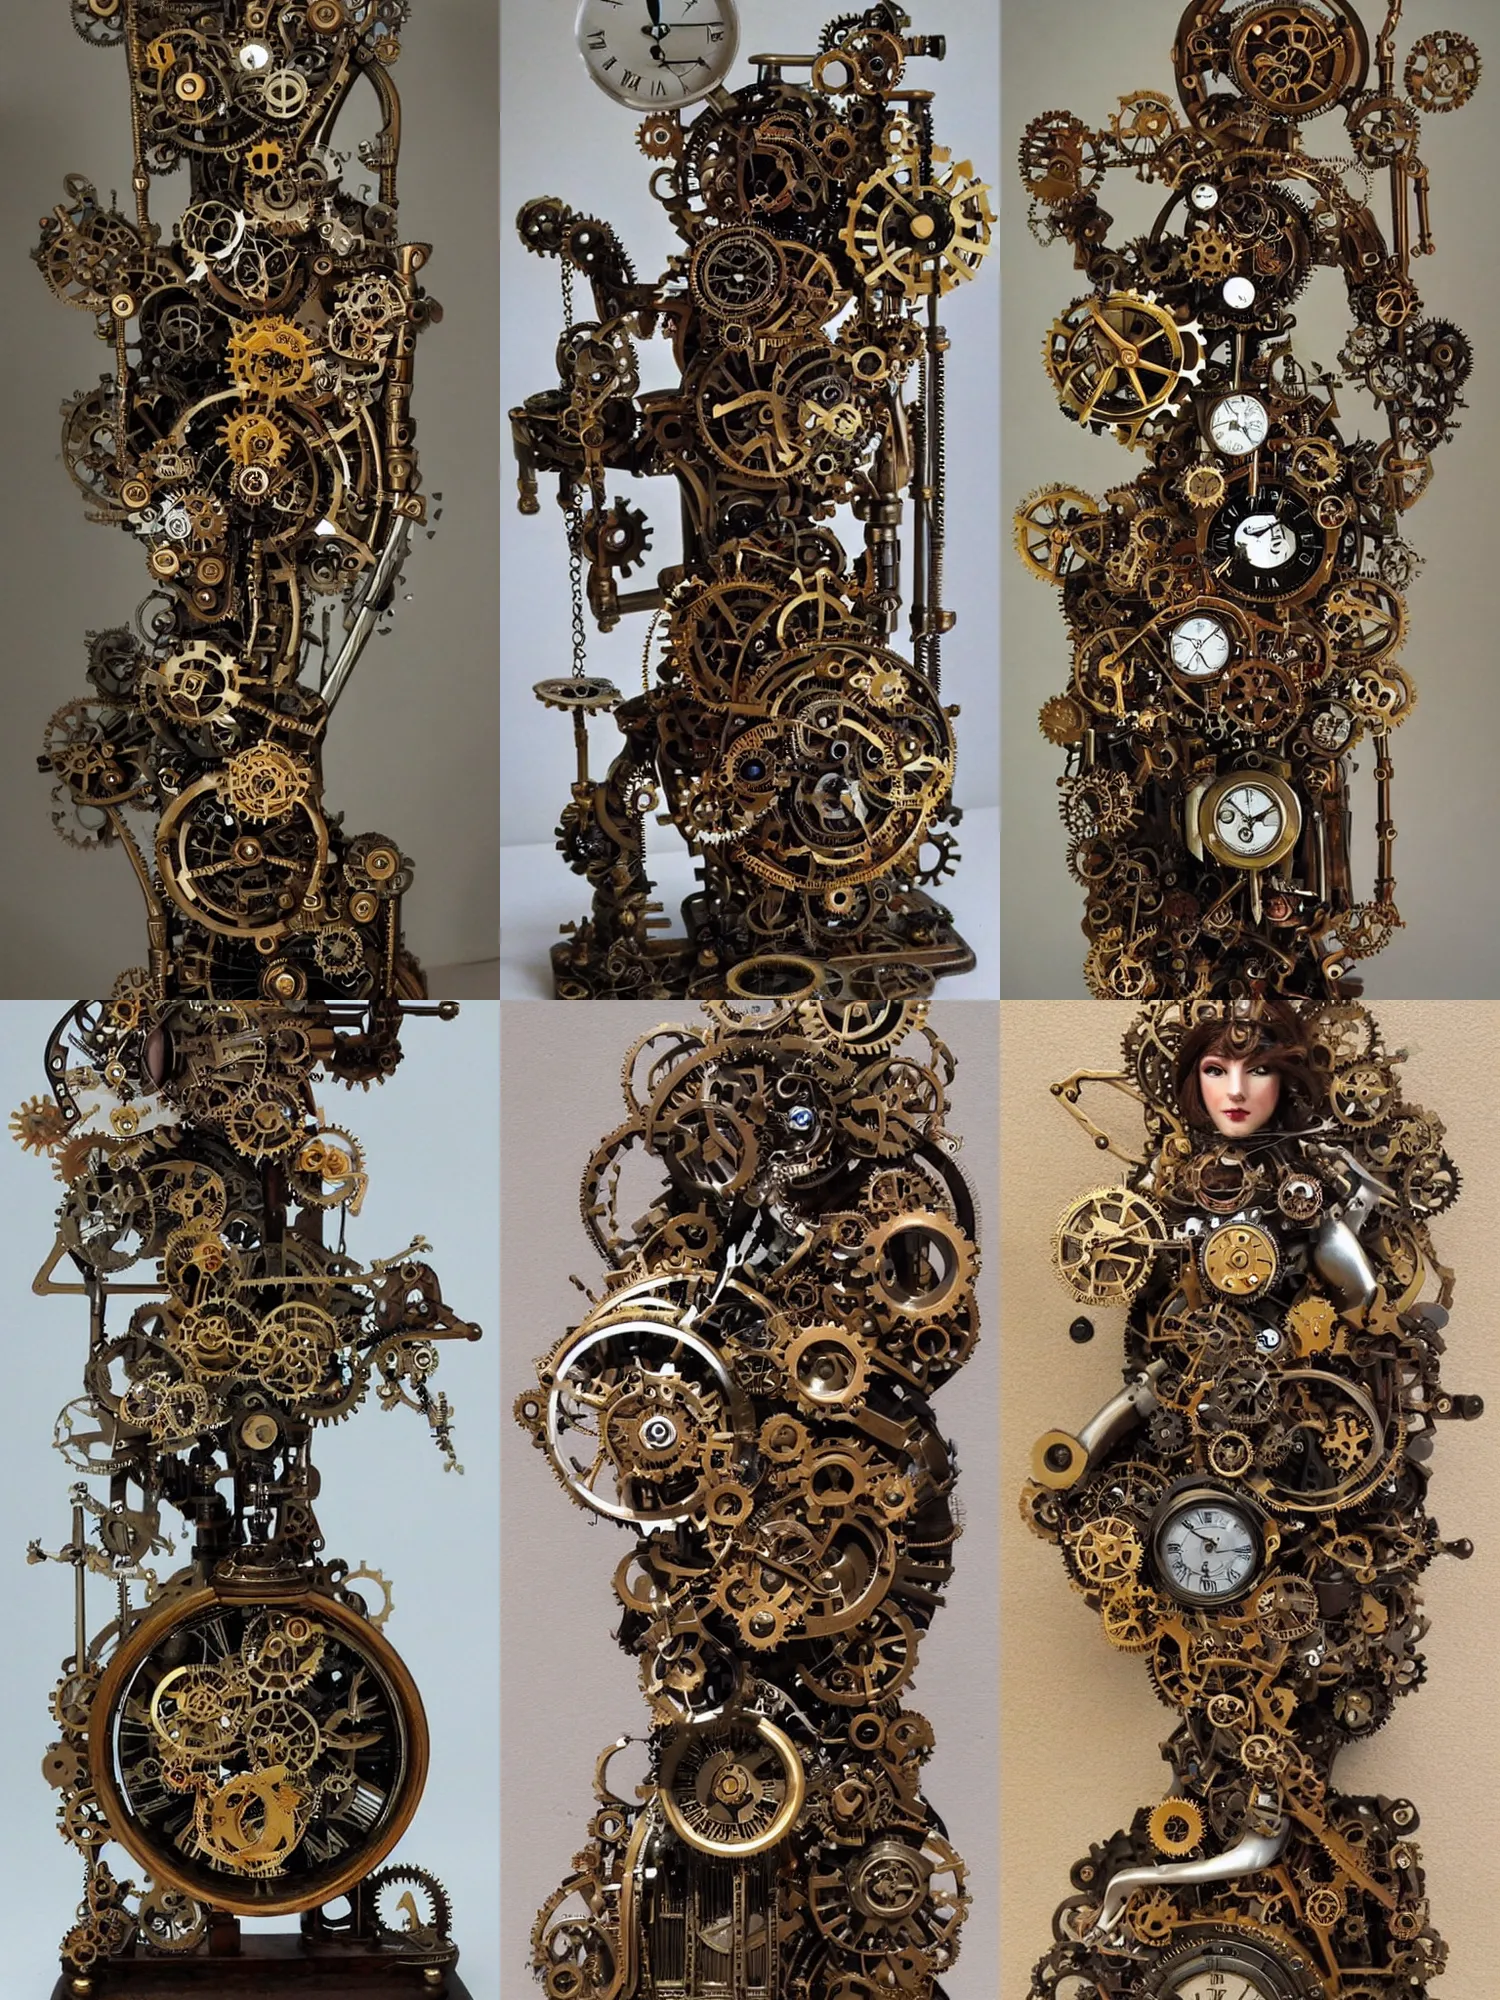 Prompt: steampunk mechanical goddess, holding a complex mechanical clock device, fantasy art sculpture,